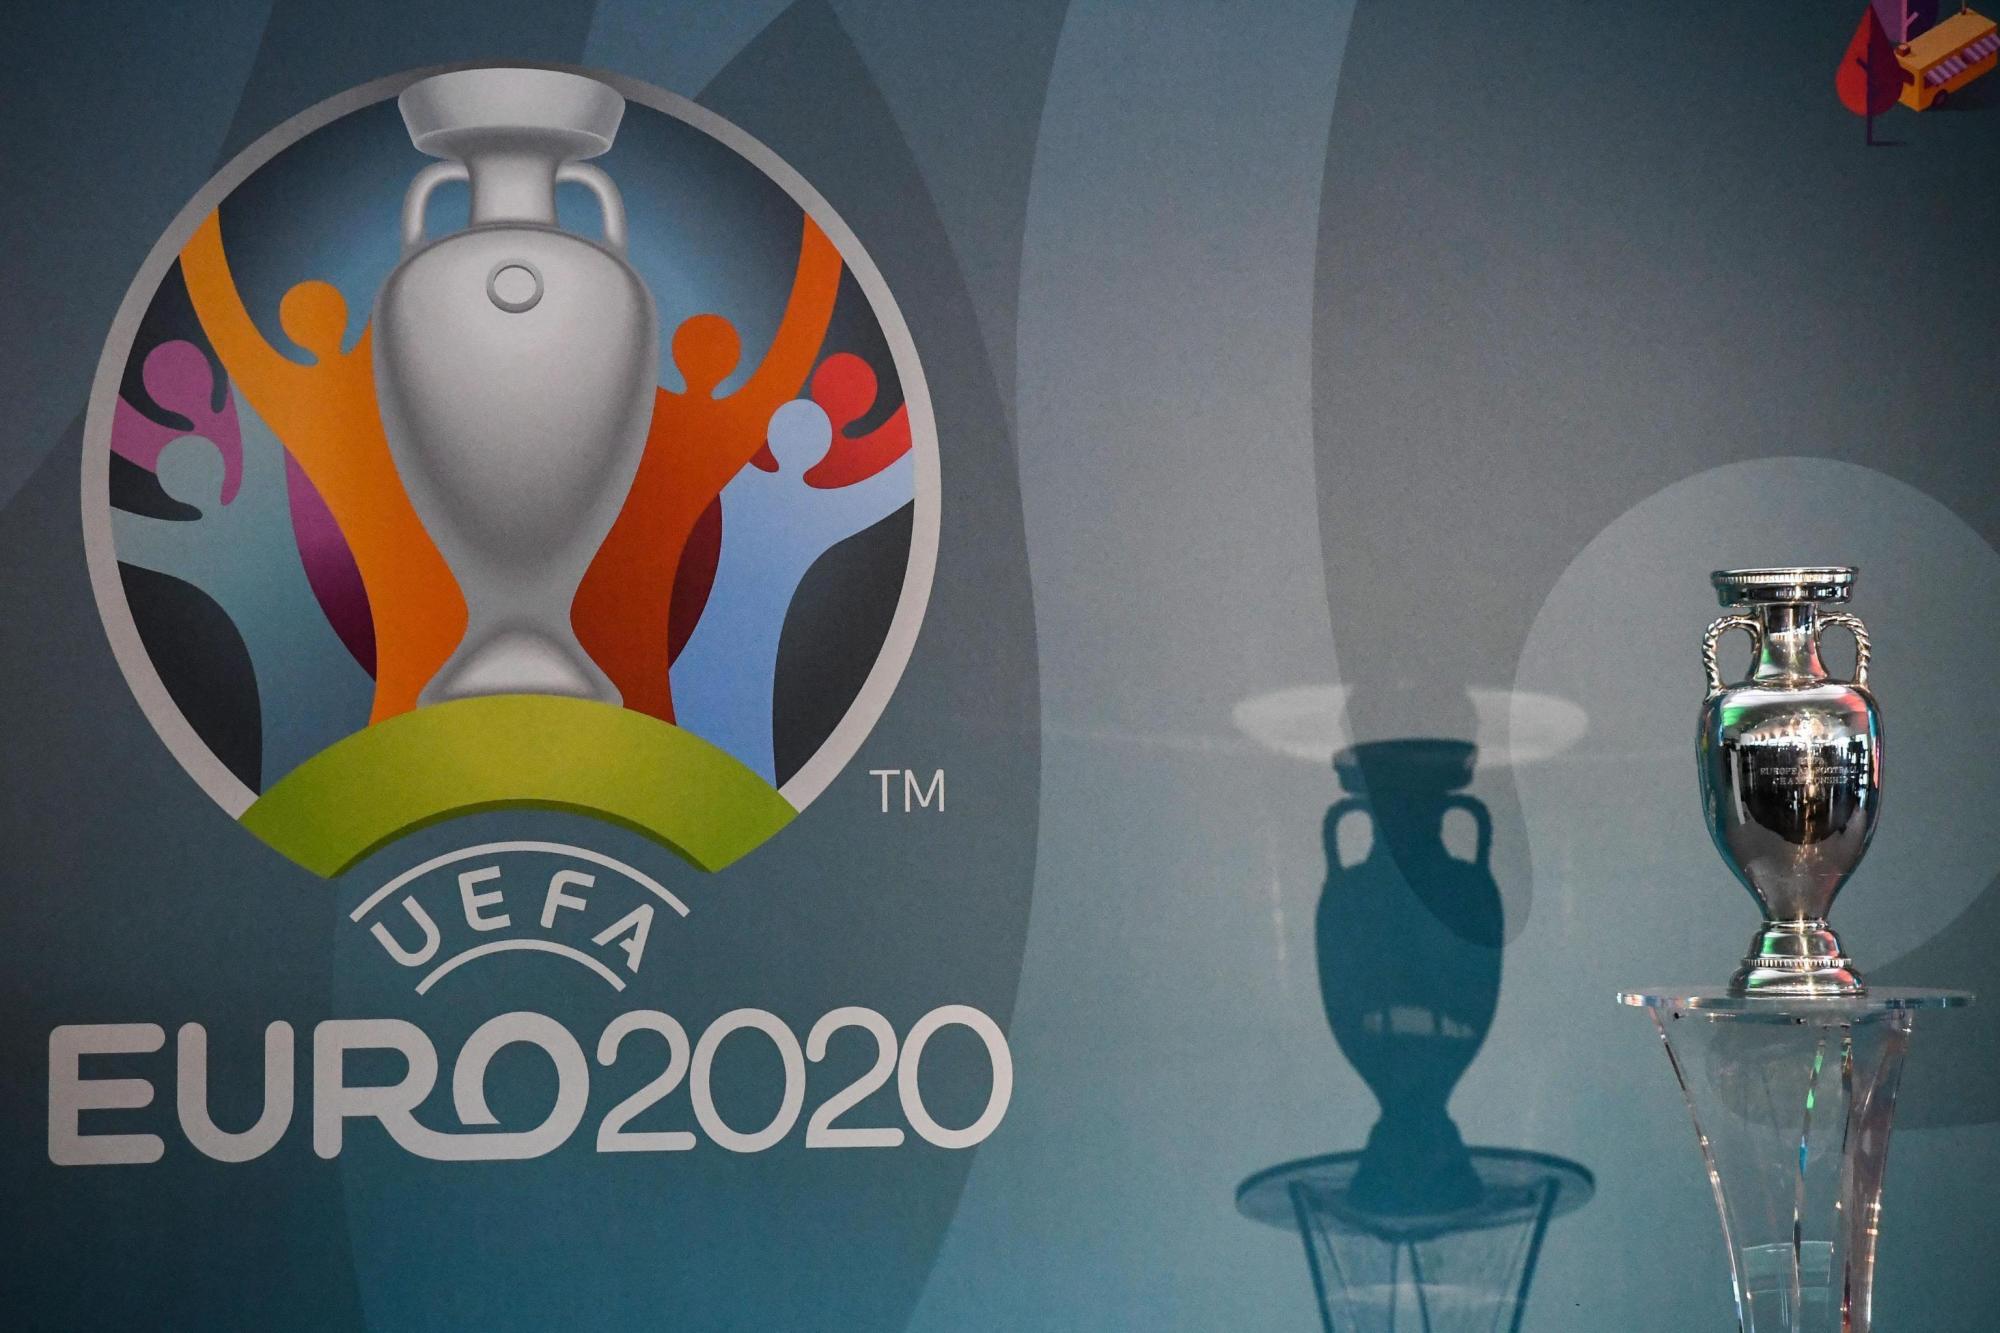 Vista de la Copa Henri Delaunay durante una ceremonia para la presentación del logo oficial para la Eurocopa 2020 en Roma, Italia, hoy 22 de septiembre de 2016. 